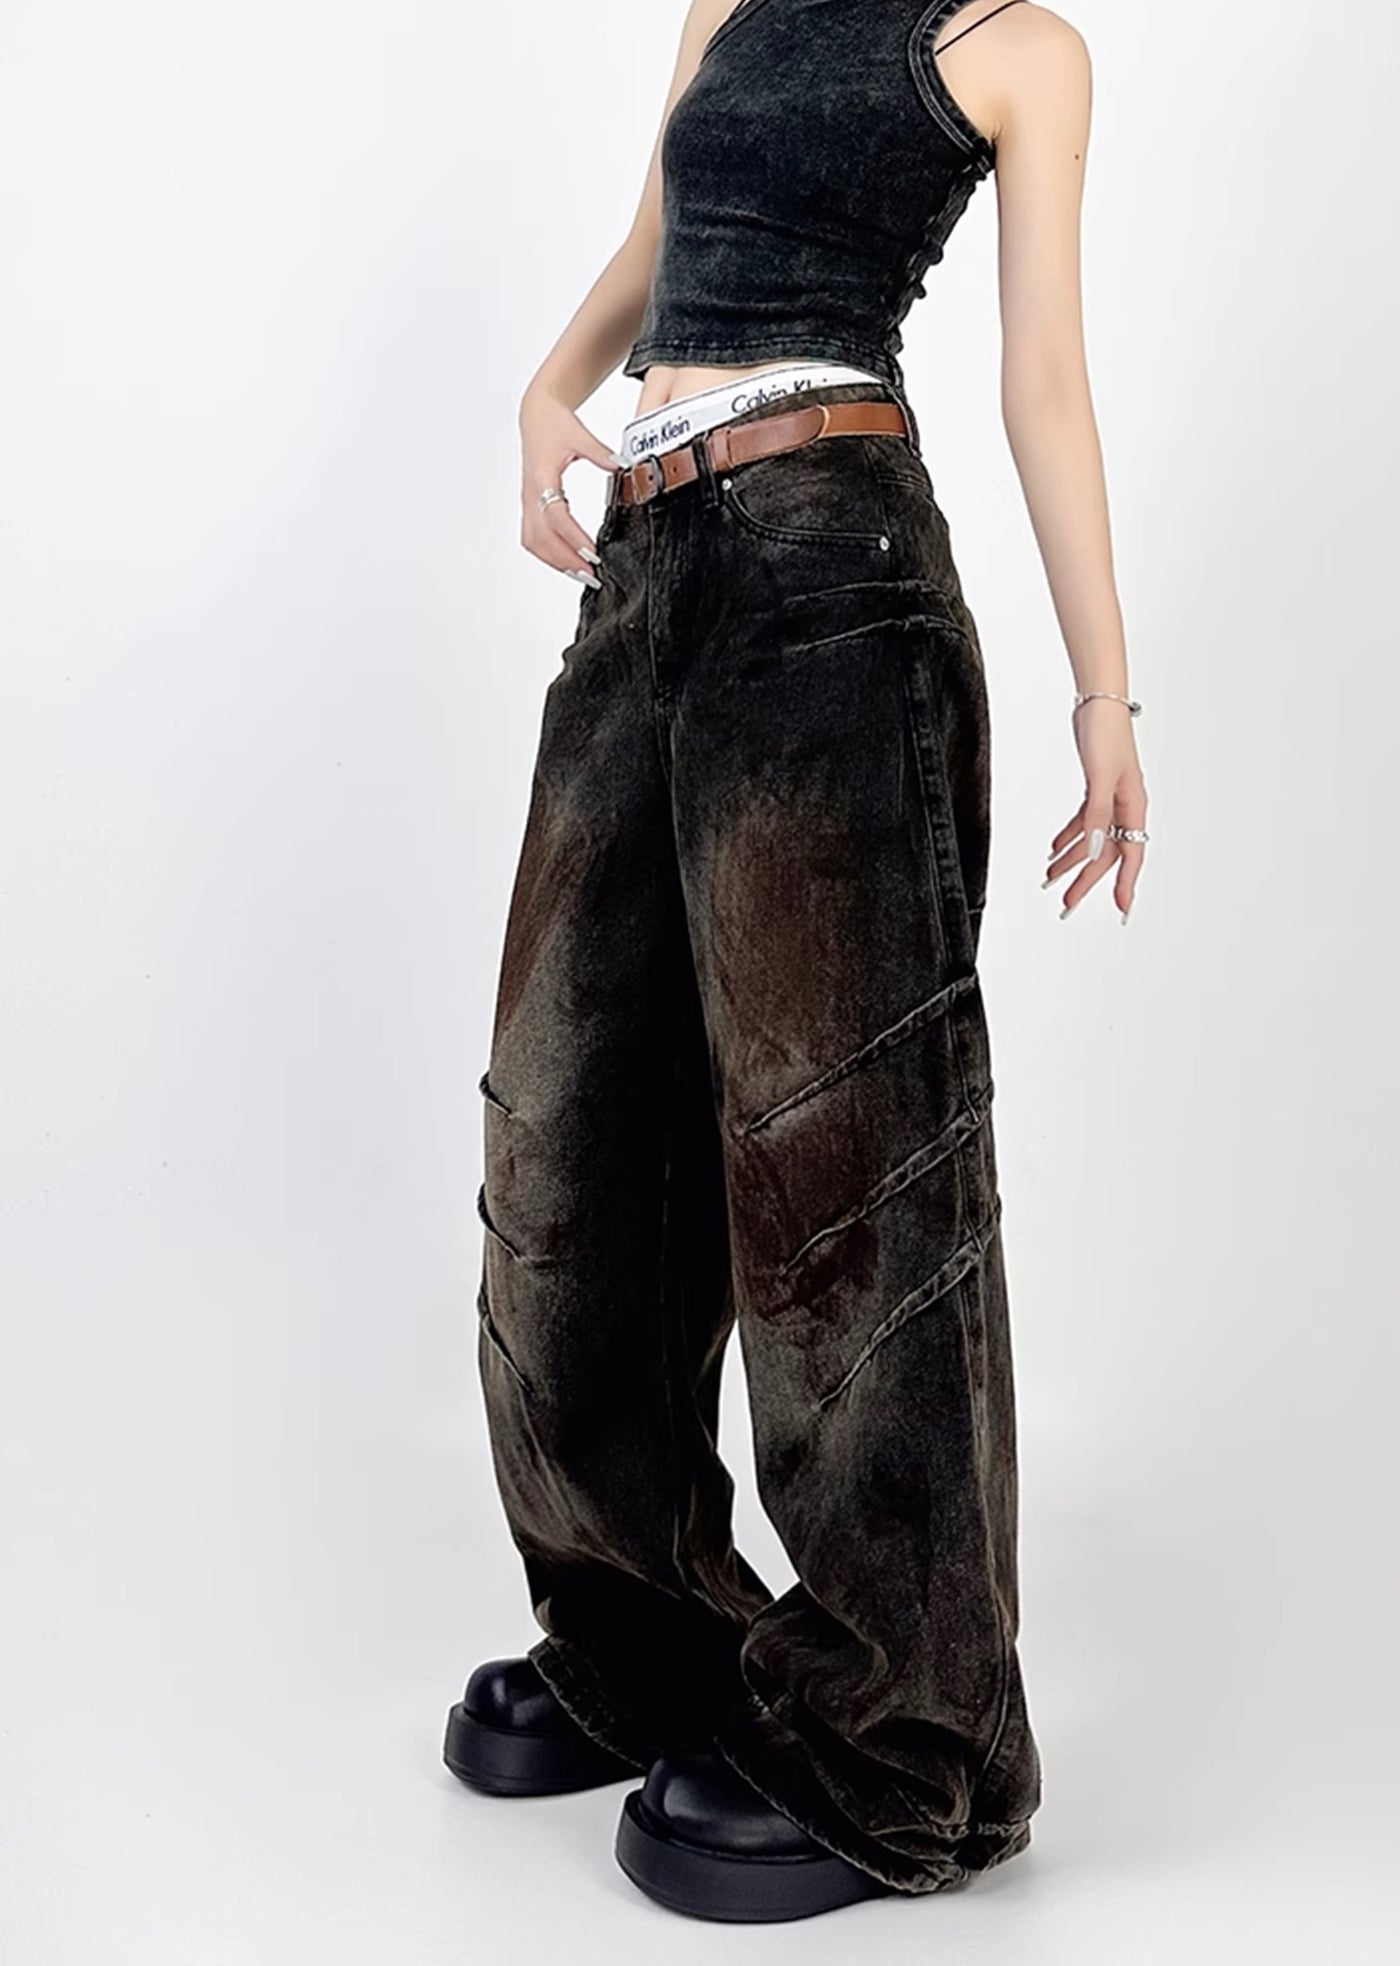 【4/29新作】Double claw mark design grunge rust color wide denim pants  HL3039